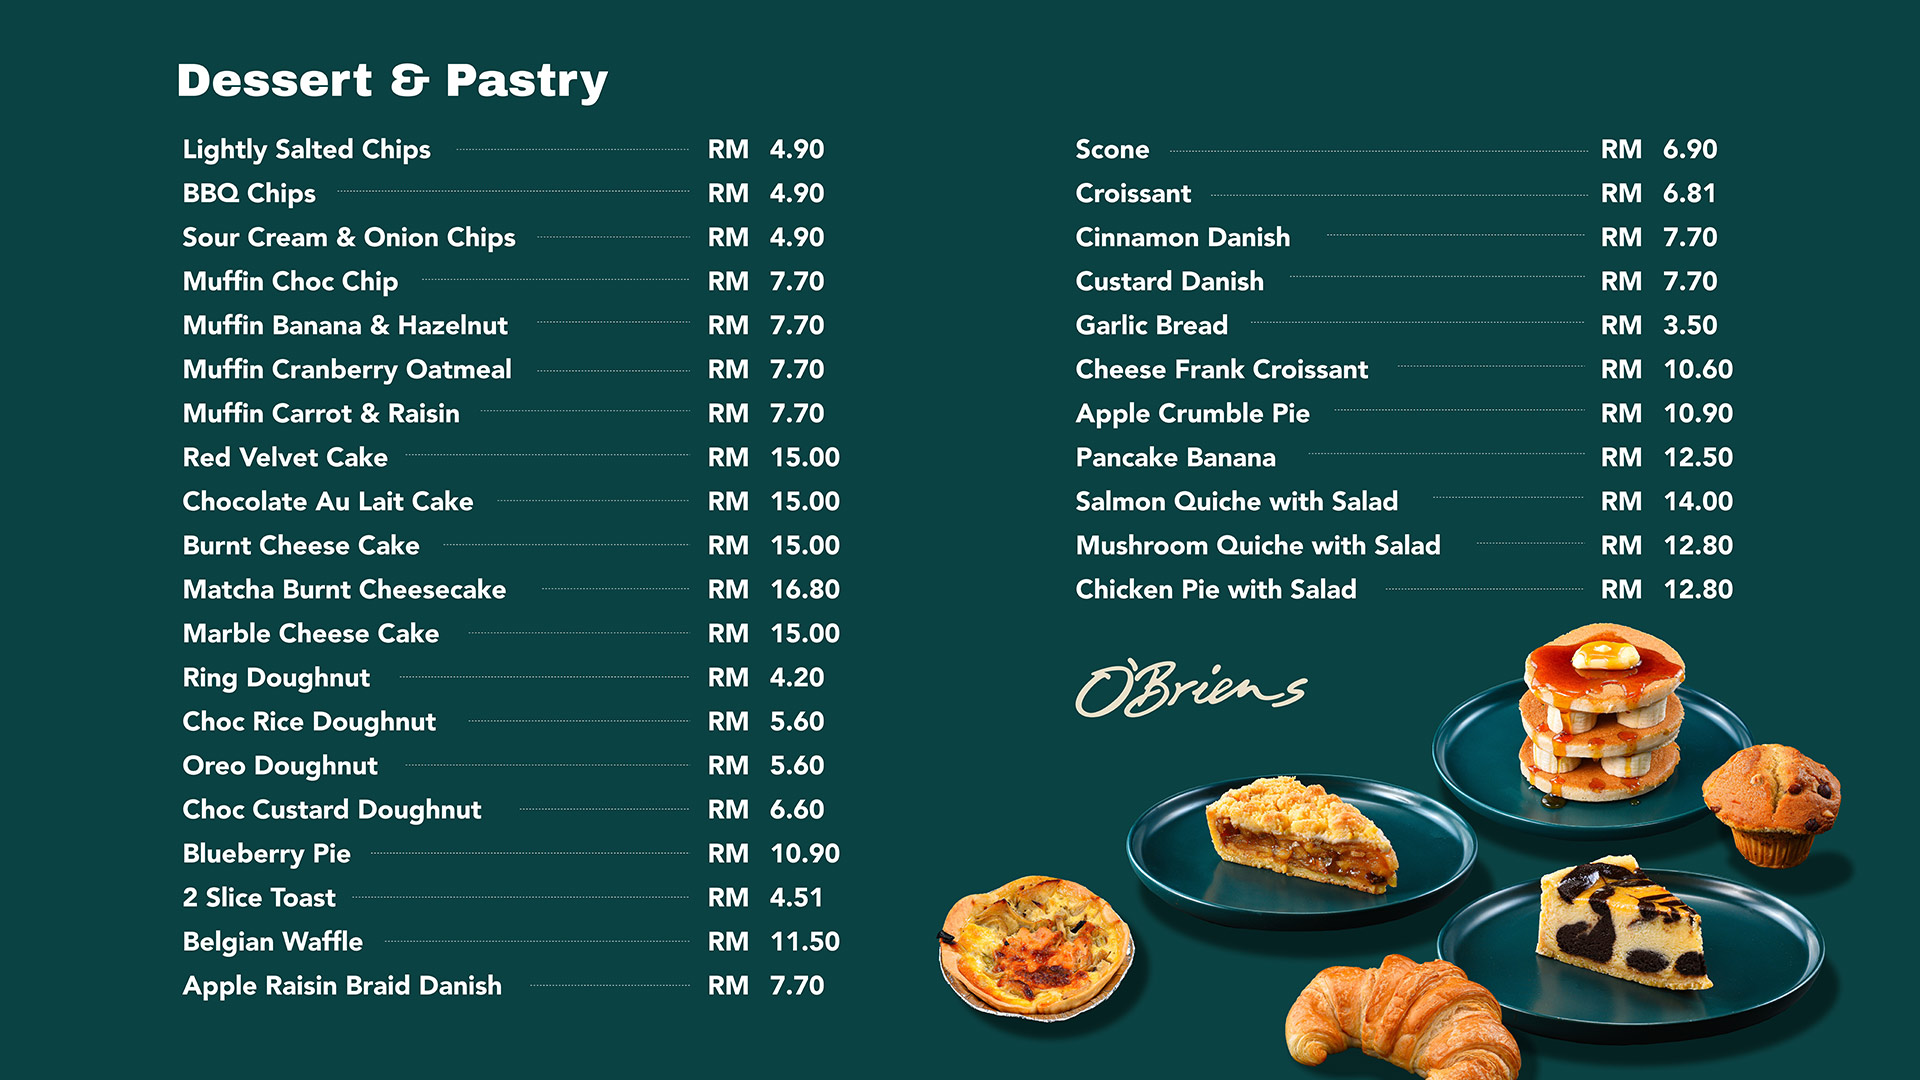 pastry-_-dessert_-digital-menu_Obriens_outline-01